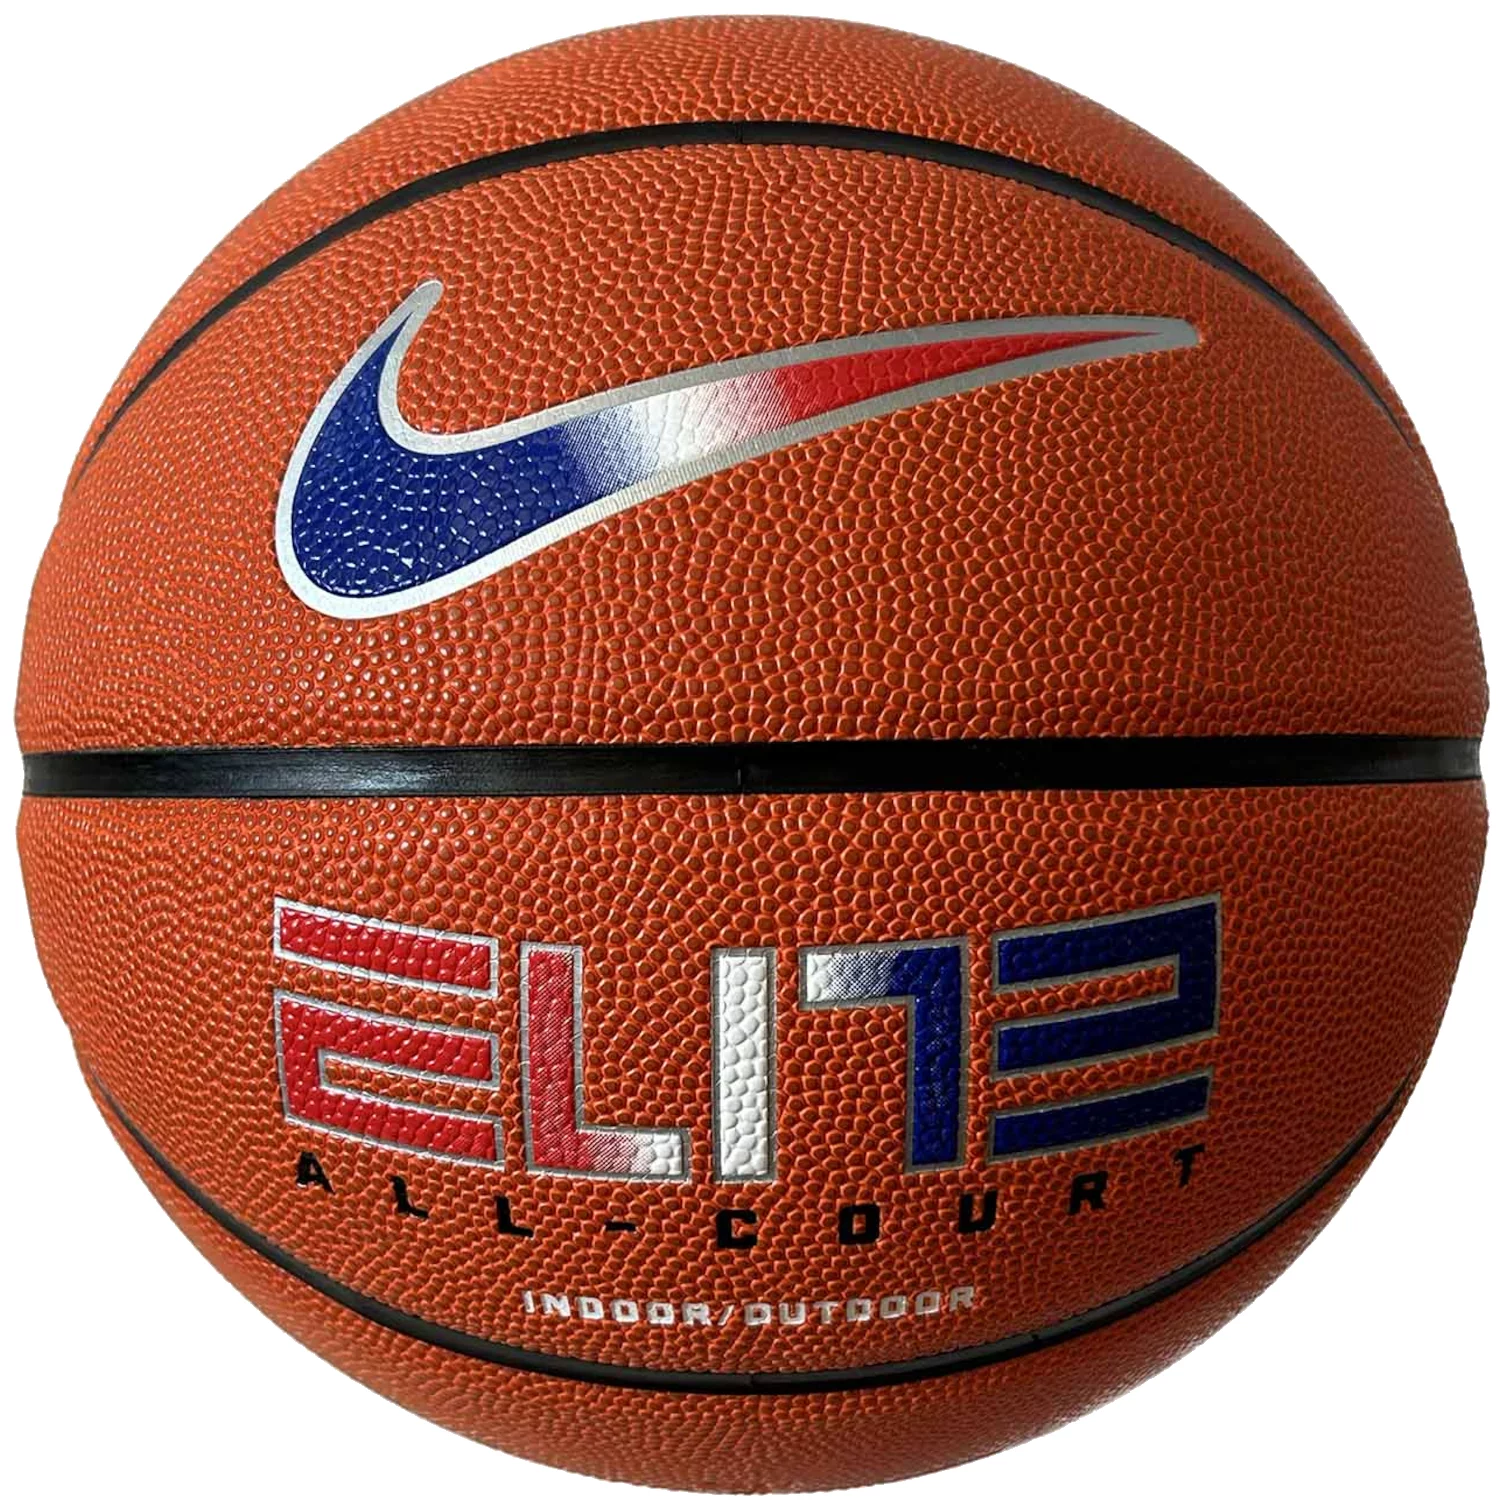 Zdjęcia - Piłka do koszykówki Nike Elite All Court 8P 2.0 Deflated Ball N1004088-822, Unisex, Pomarańczo 